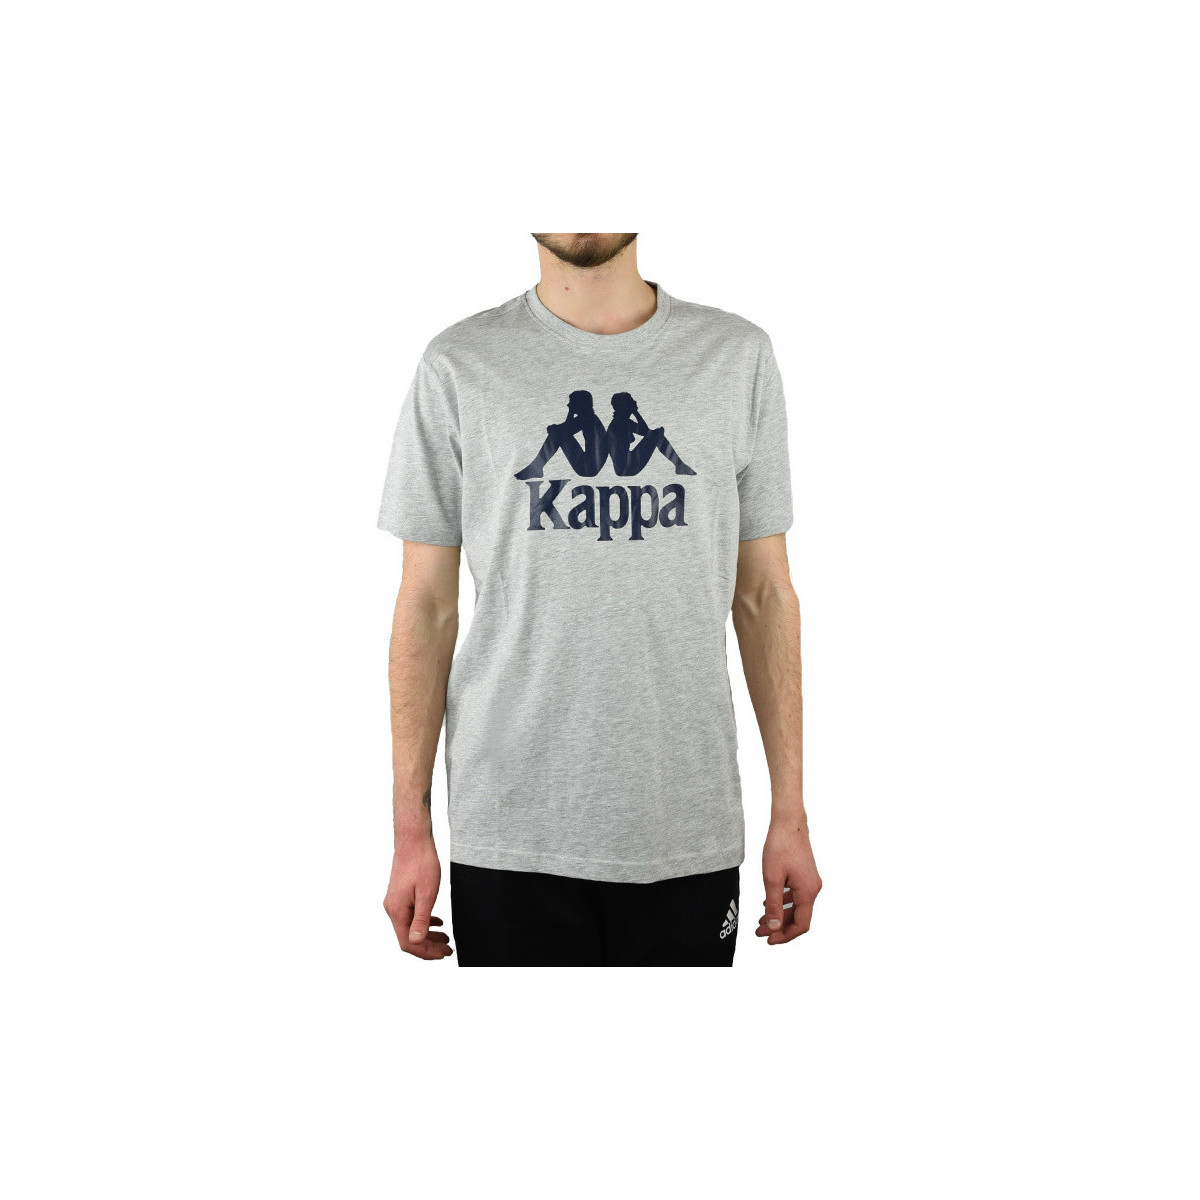 Textil Homem T-Shirt mangas curtas Kappa Caspar T-Shirt Cinza